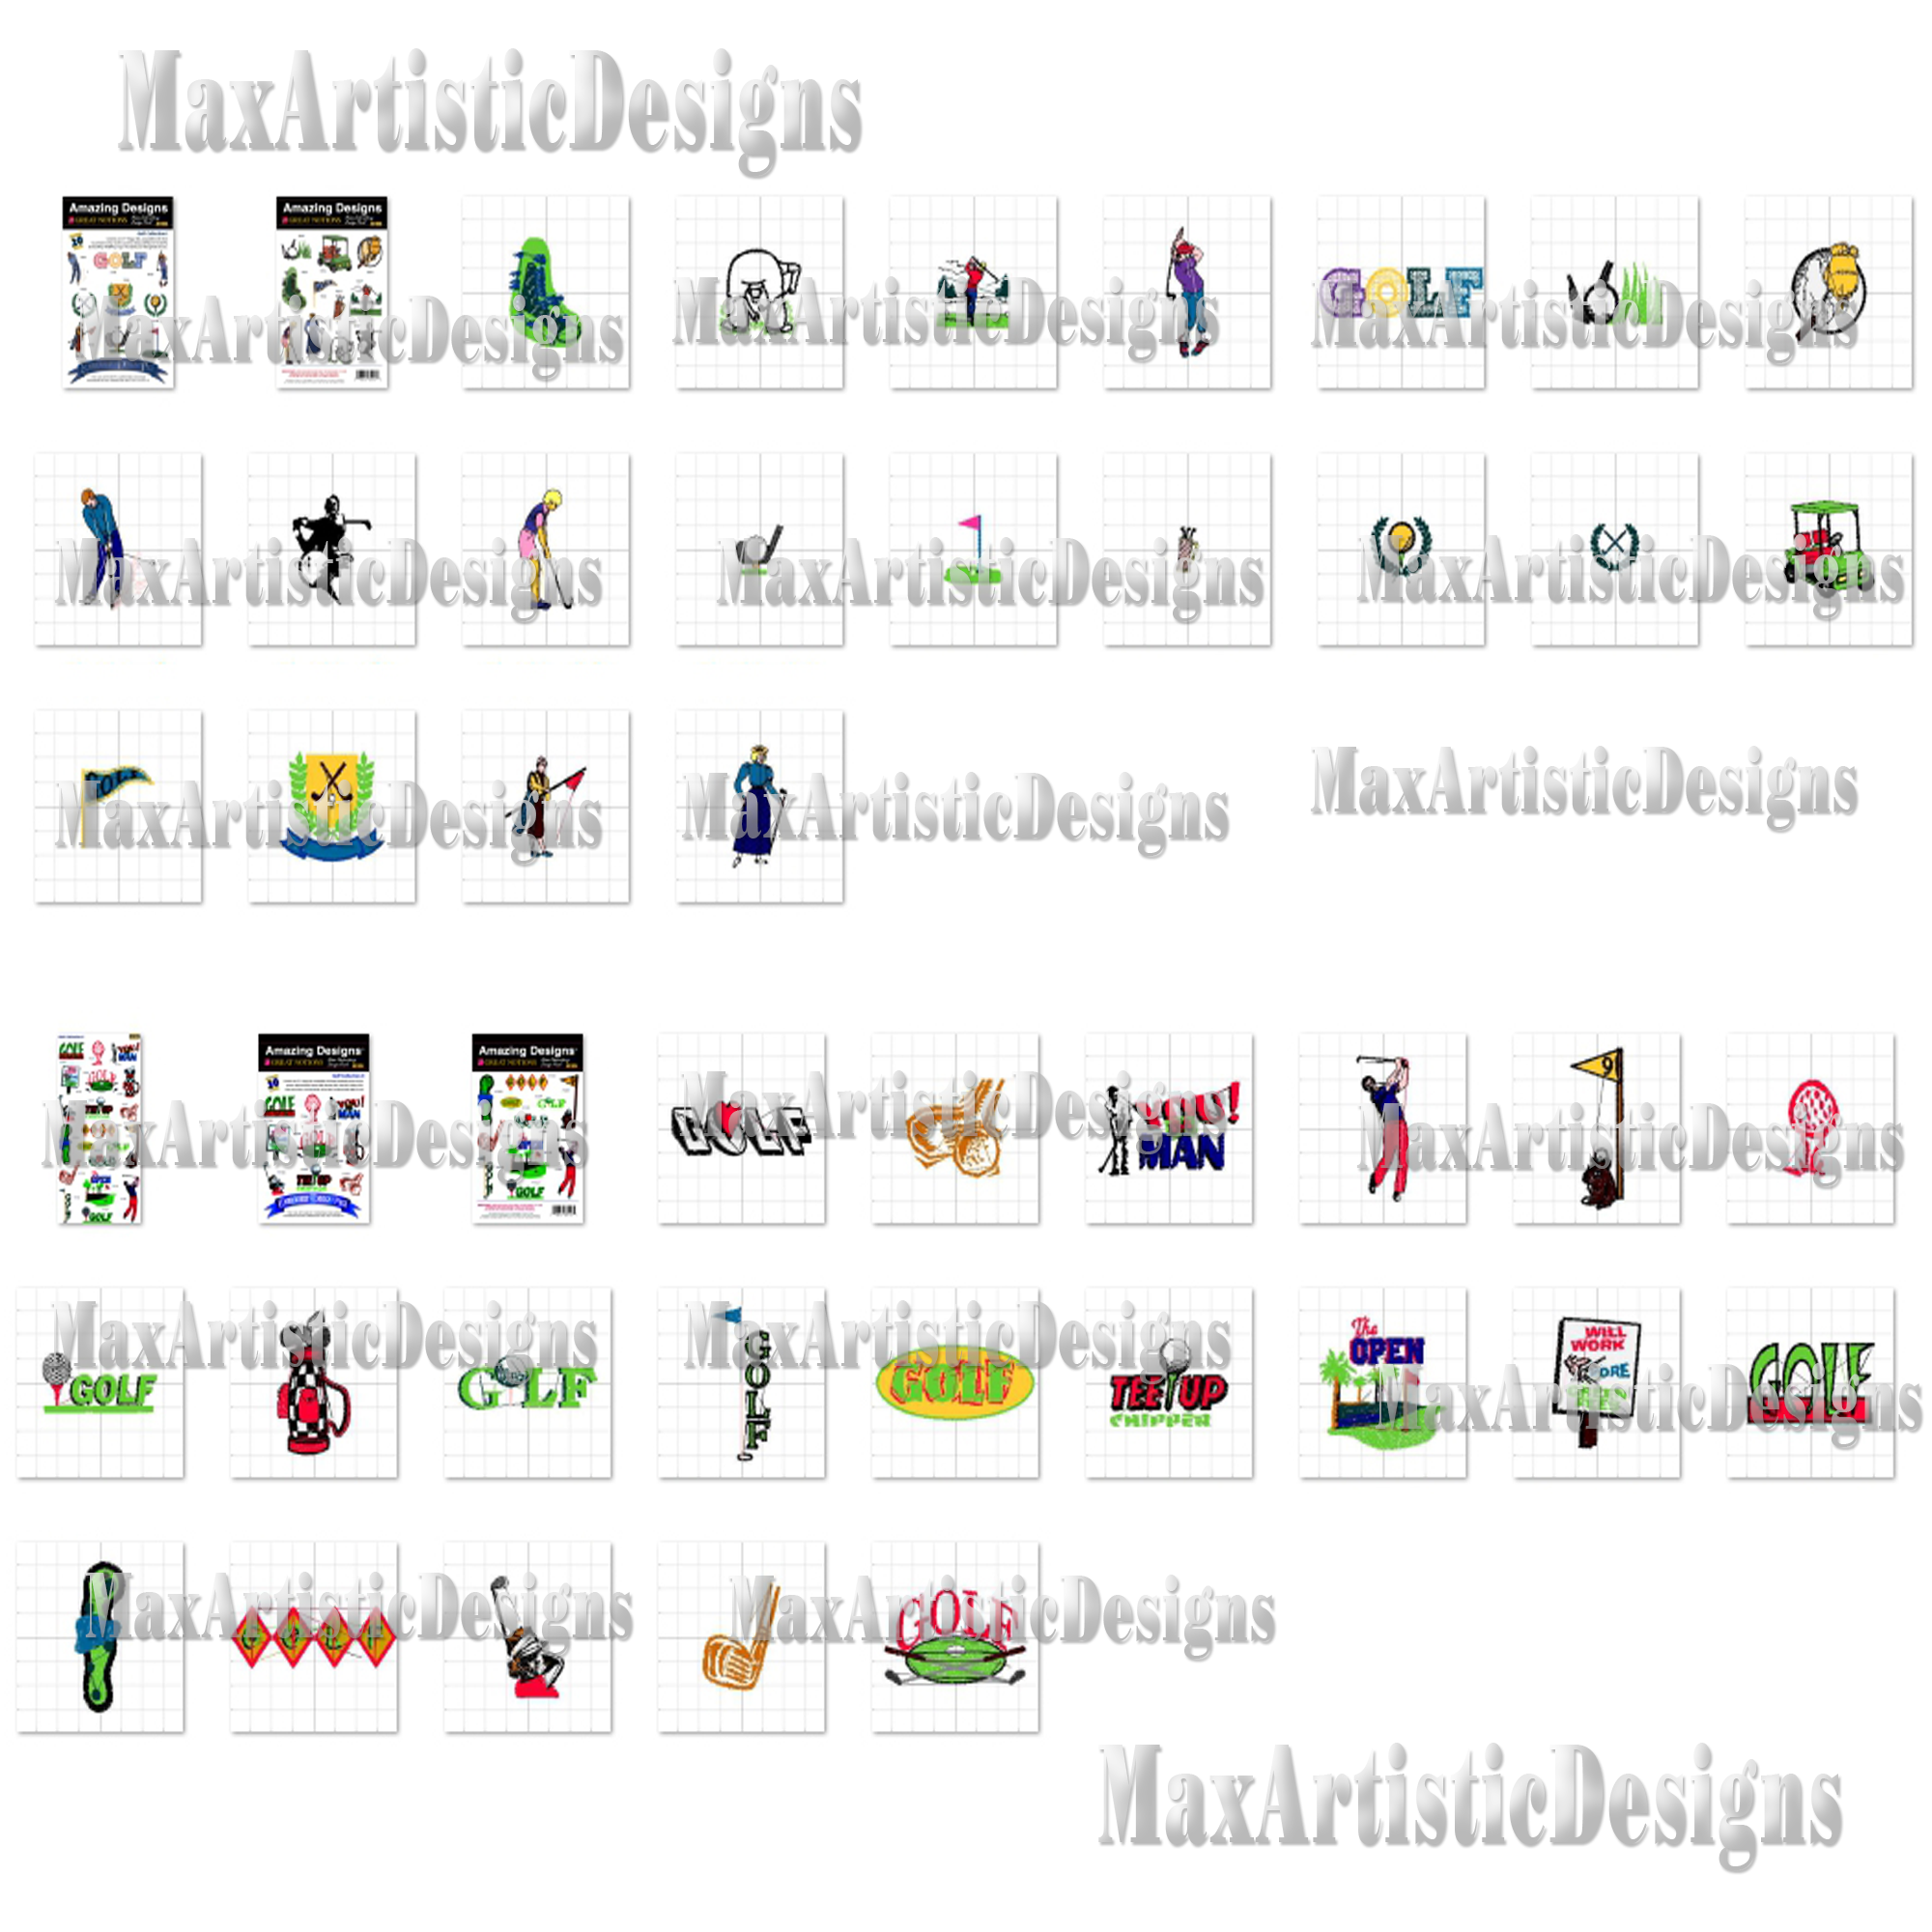 Más de 190 patrones de bordado de golf Diseños de bordado a máquina